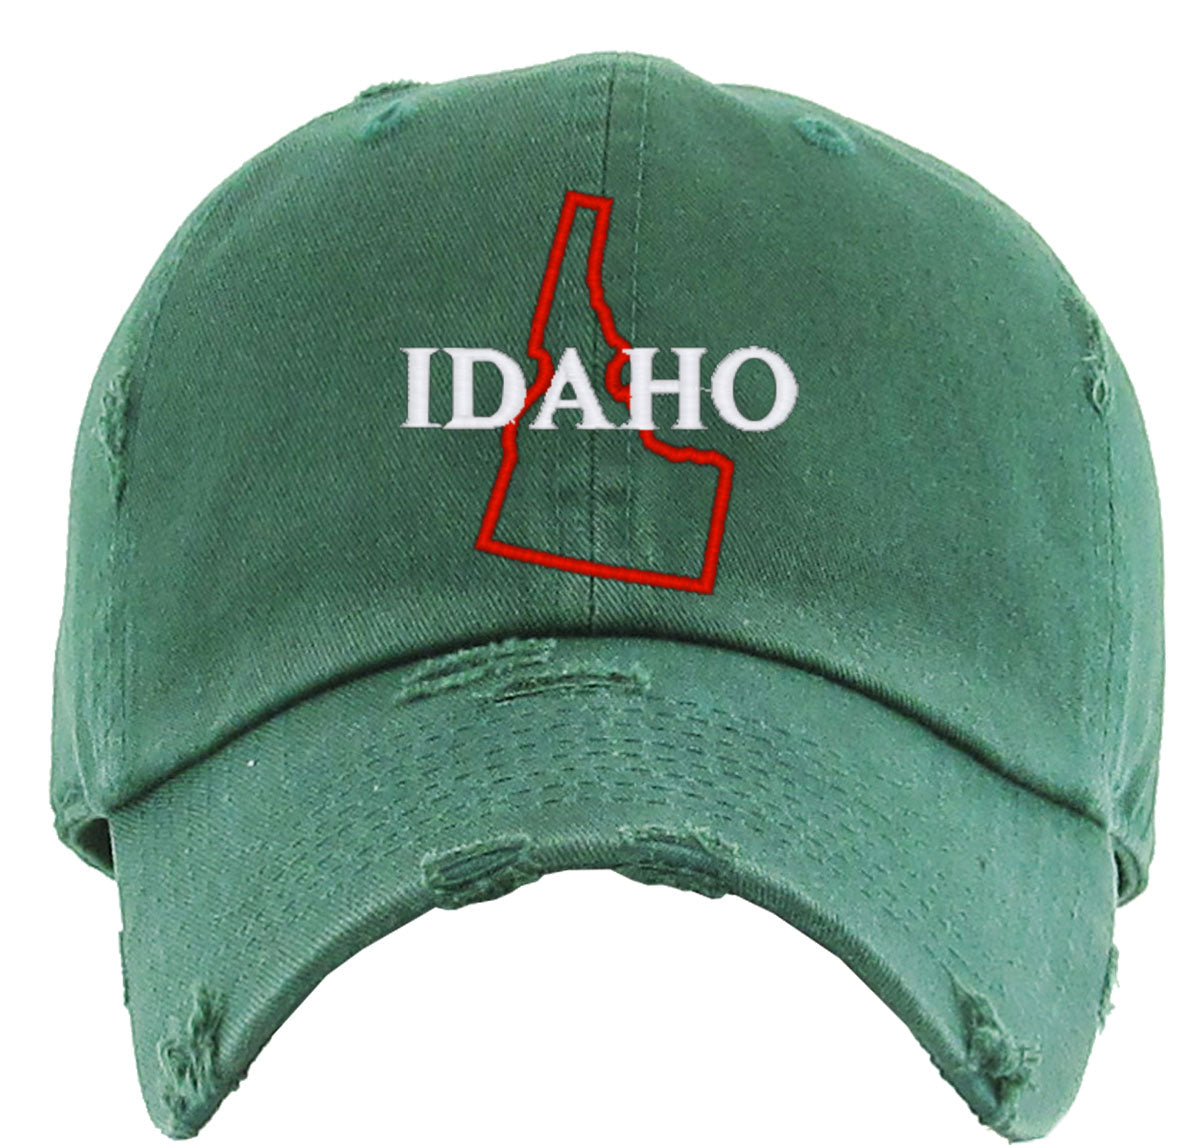 Idaho Vintage Baseball Cap